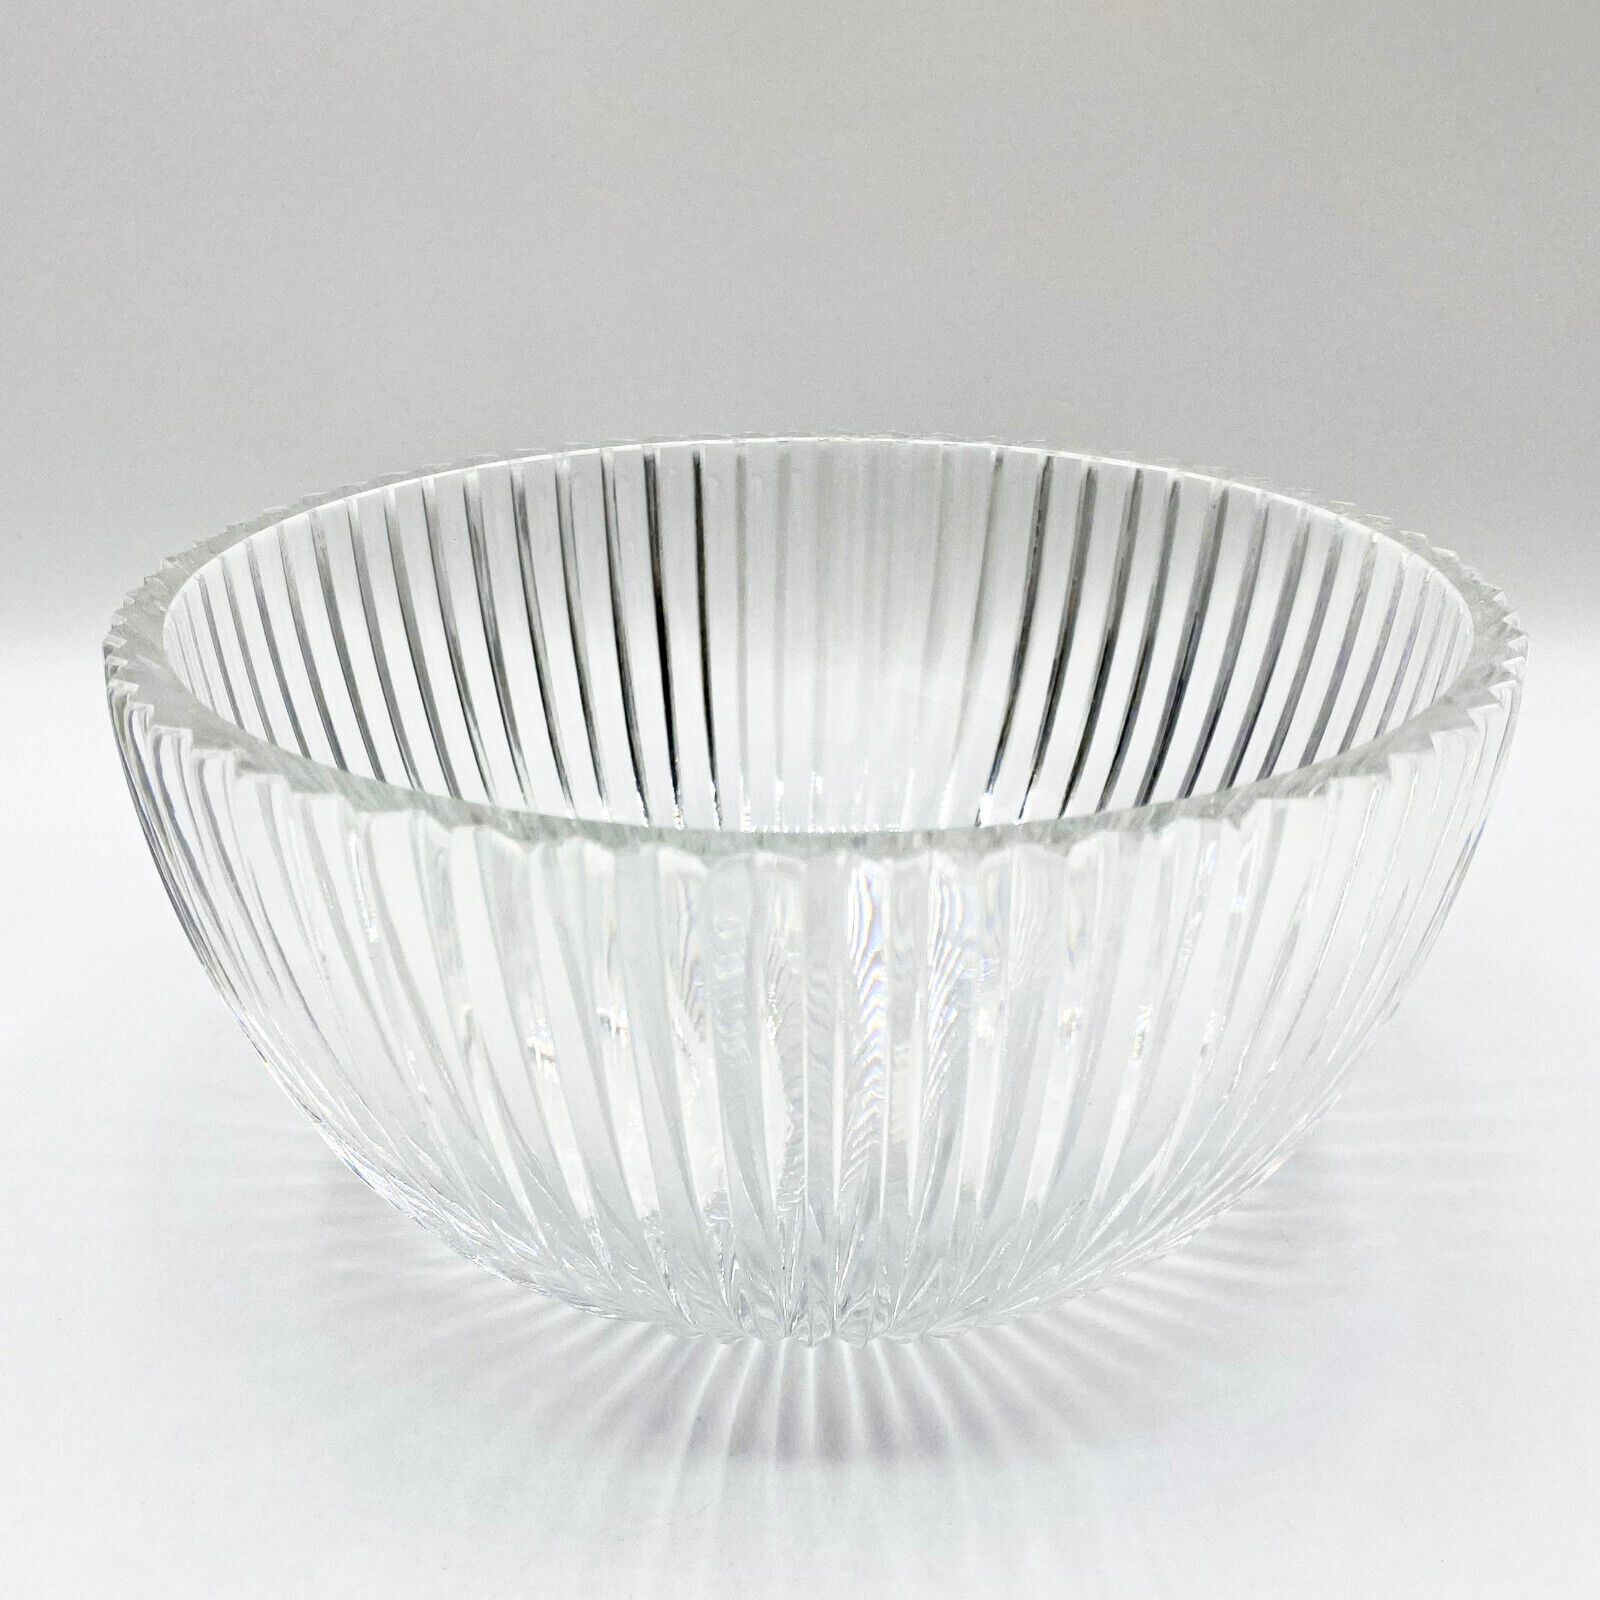 AFORS Vintage Swedish Cut Crystal Bowl Ribbed Fluted Design - KOSTA BODA